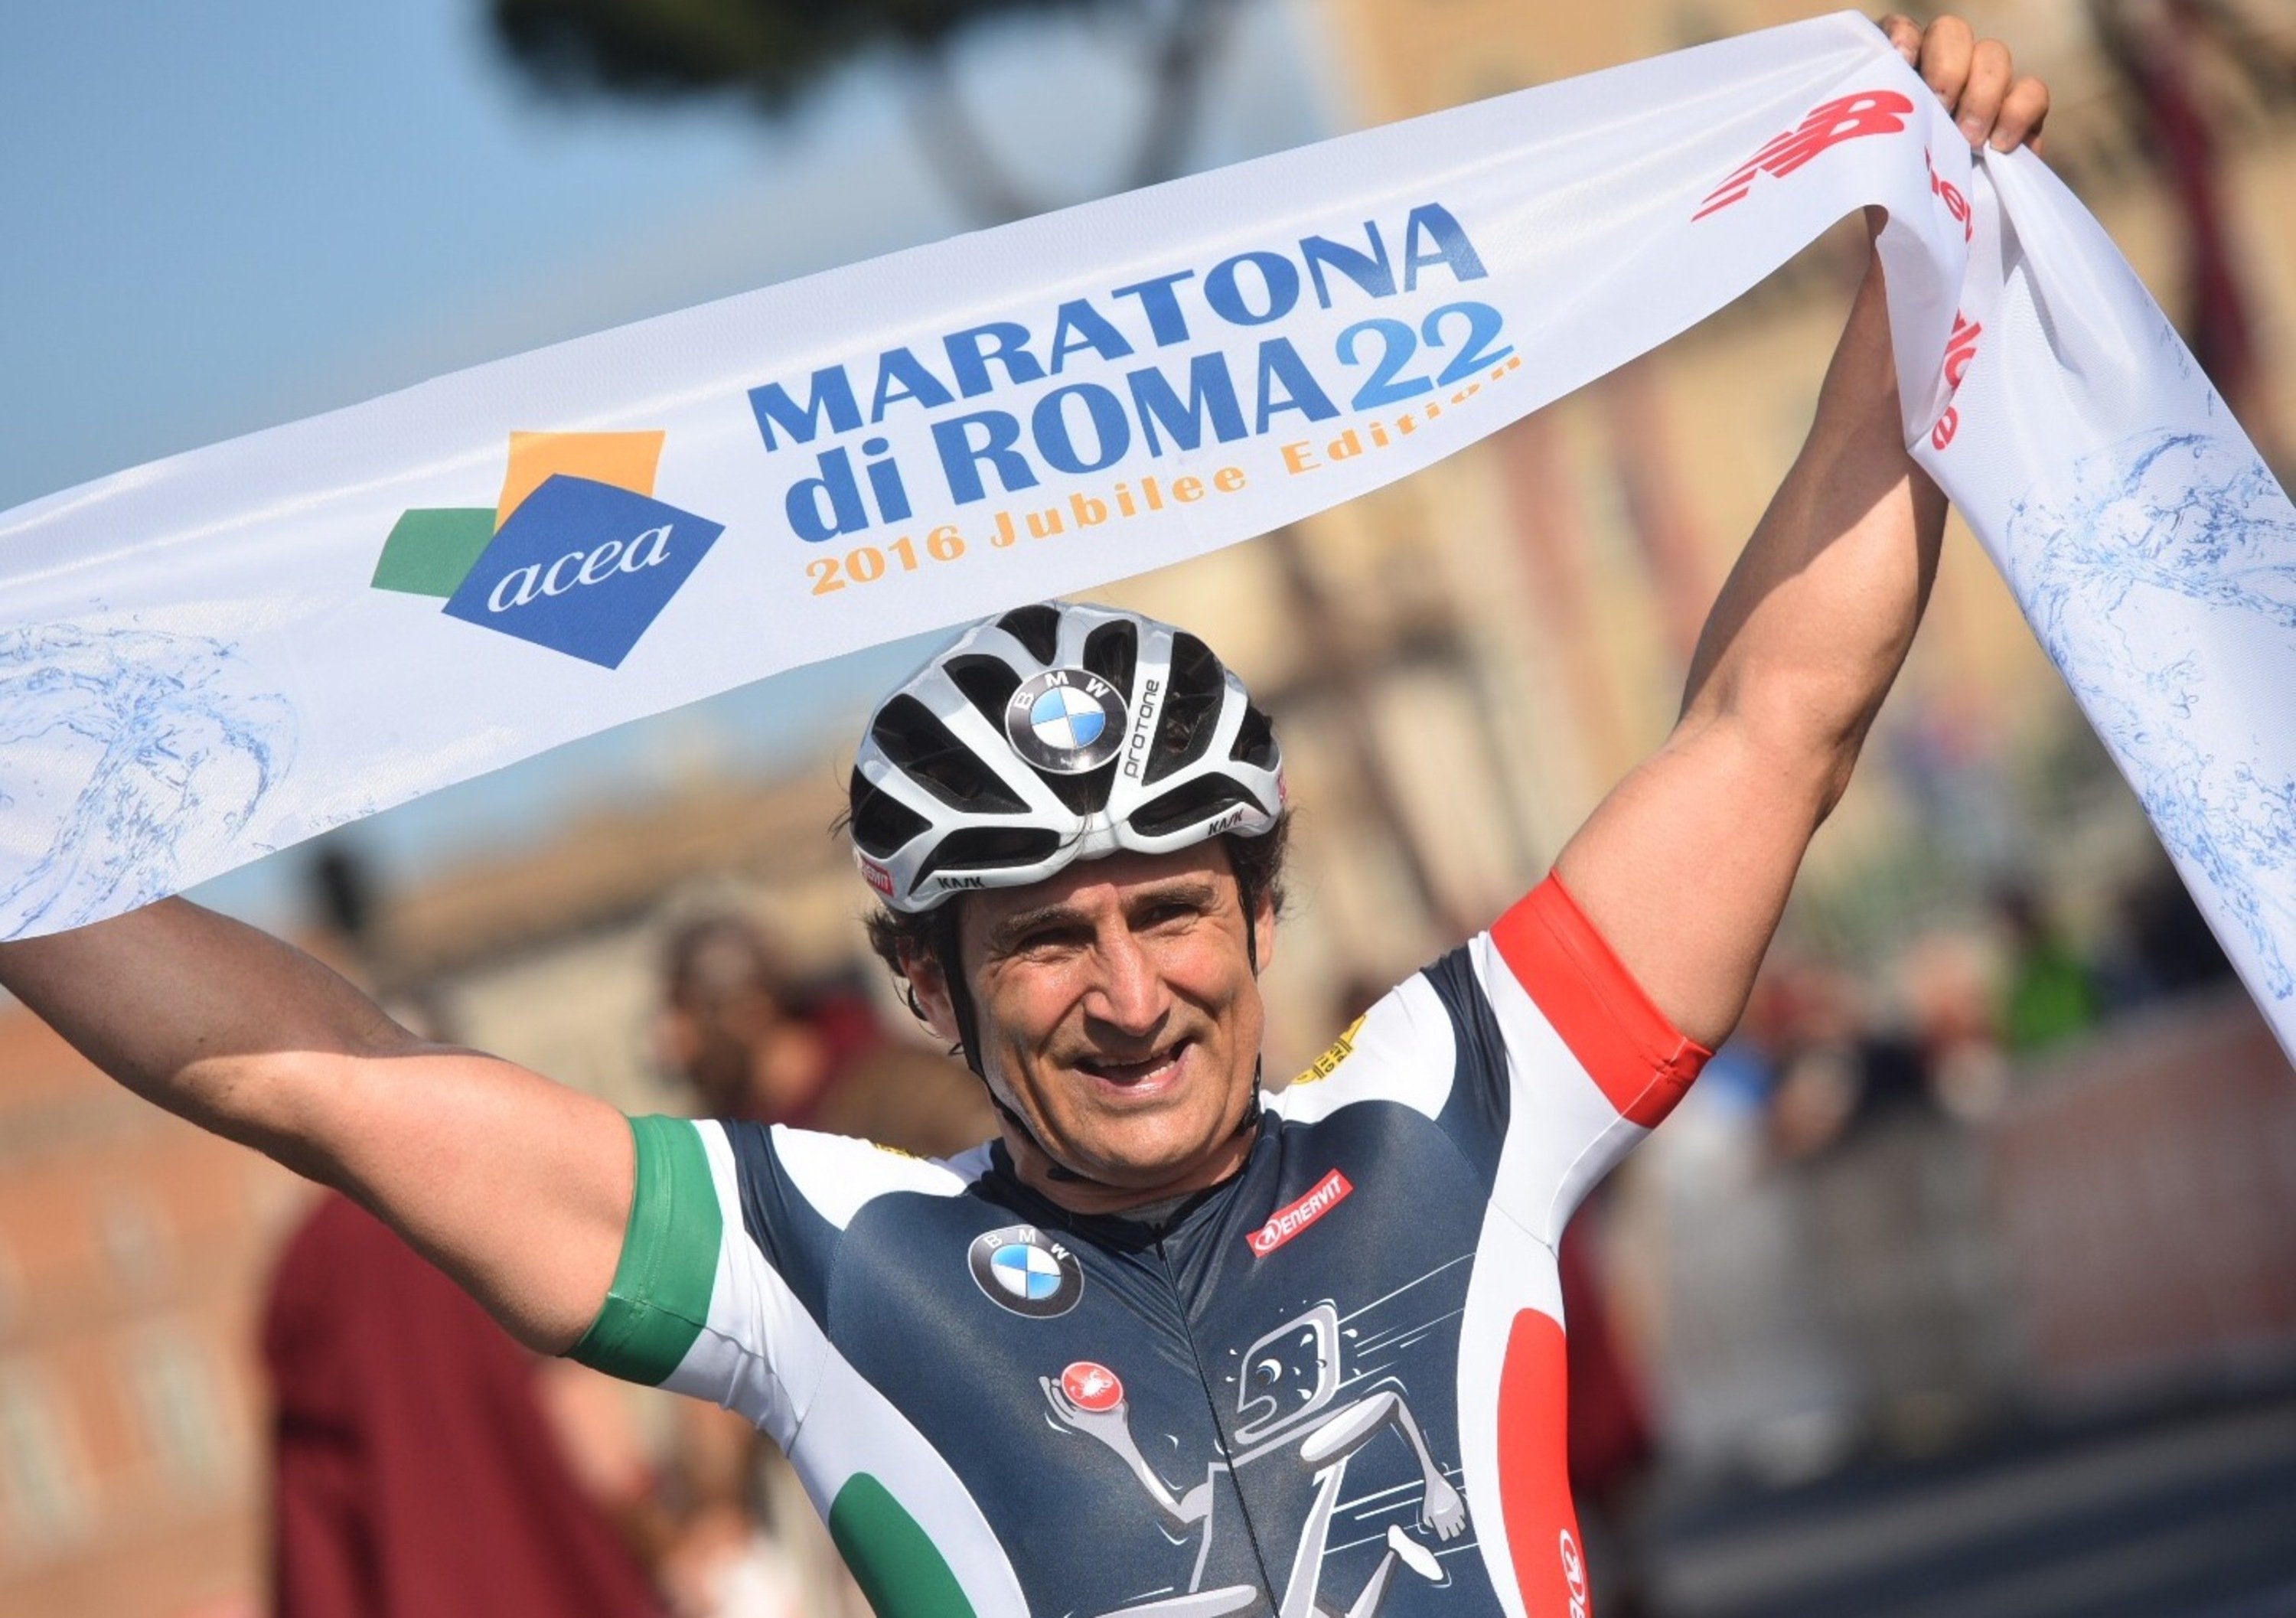 Alex Zanardi vince la Maratona di Roma 2016